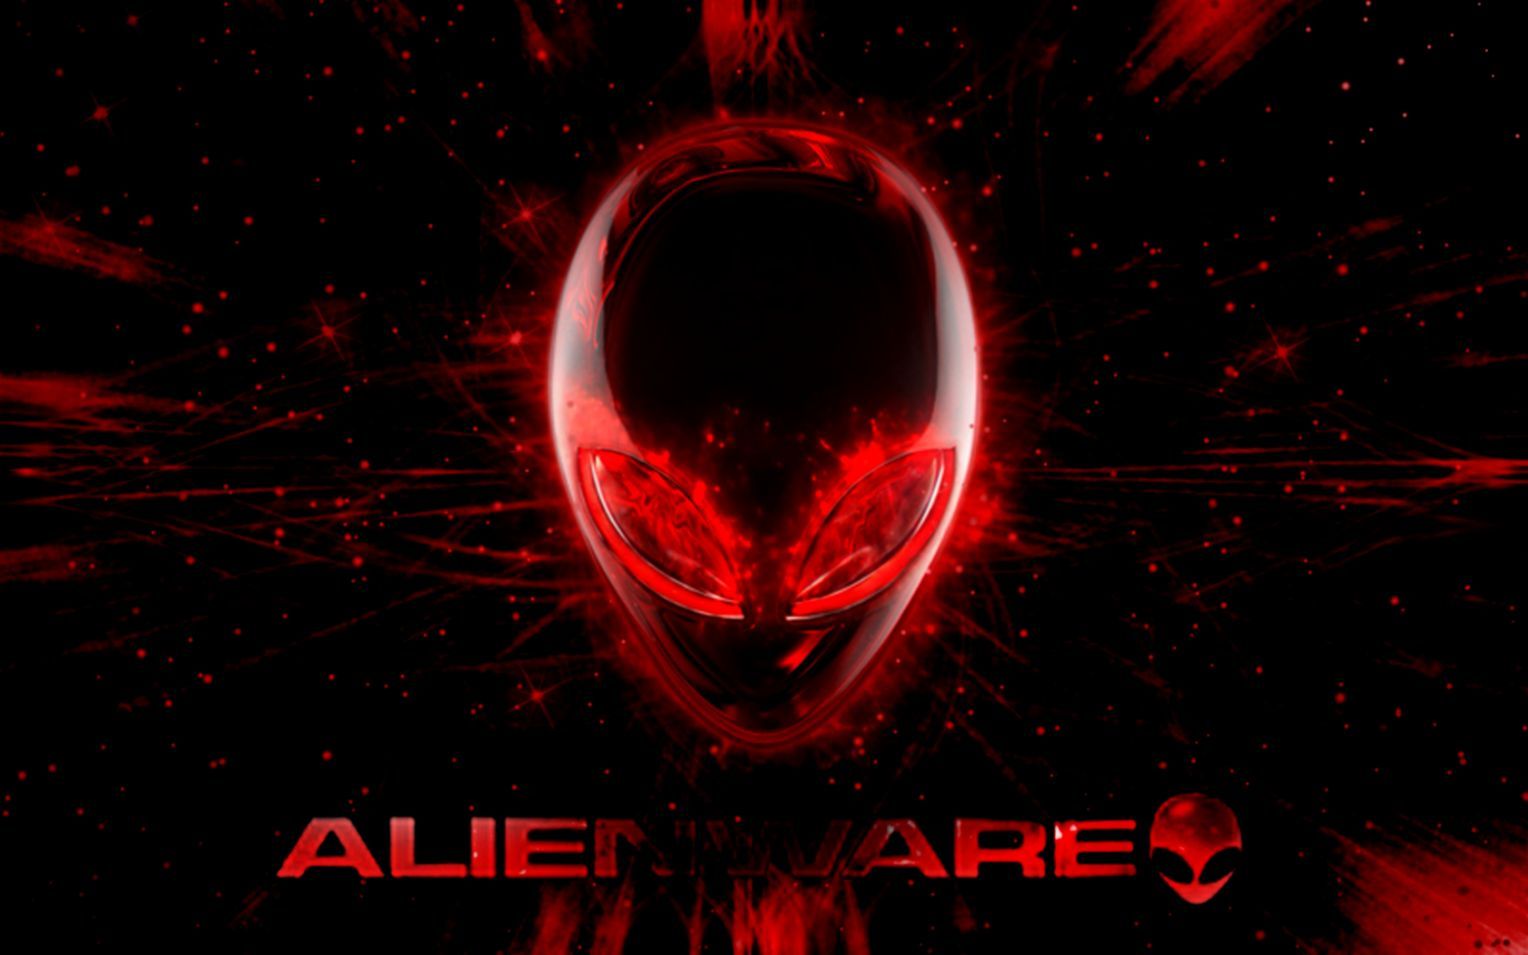 Alienware Logo Wallpapers